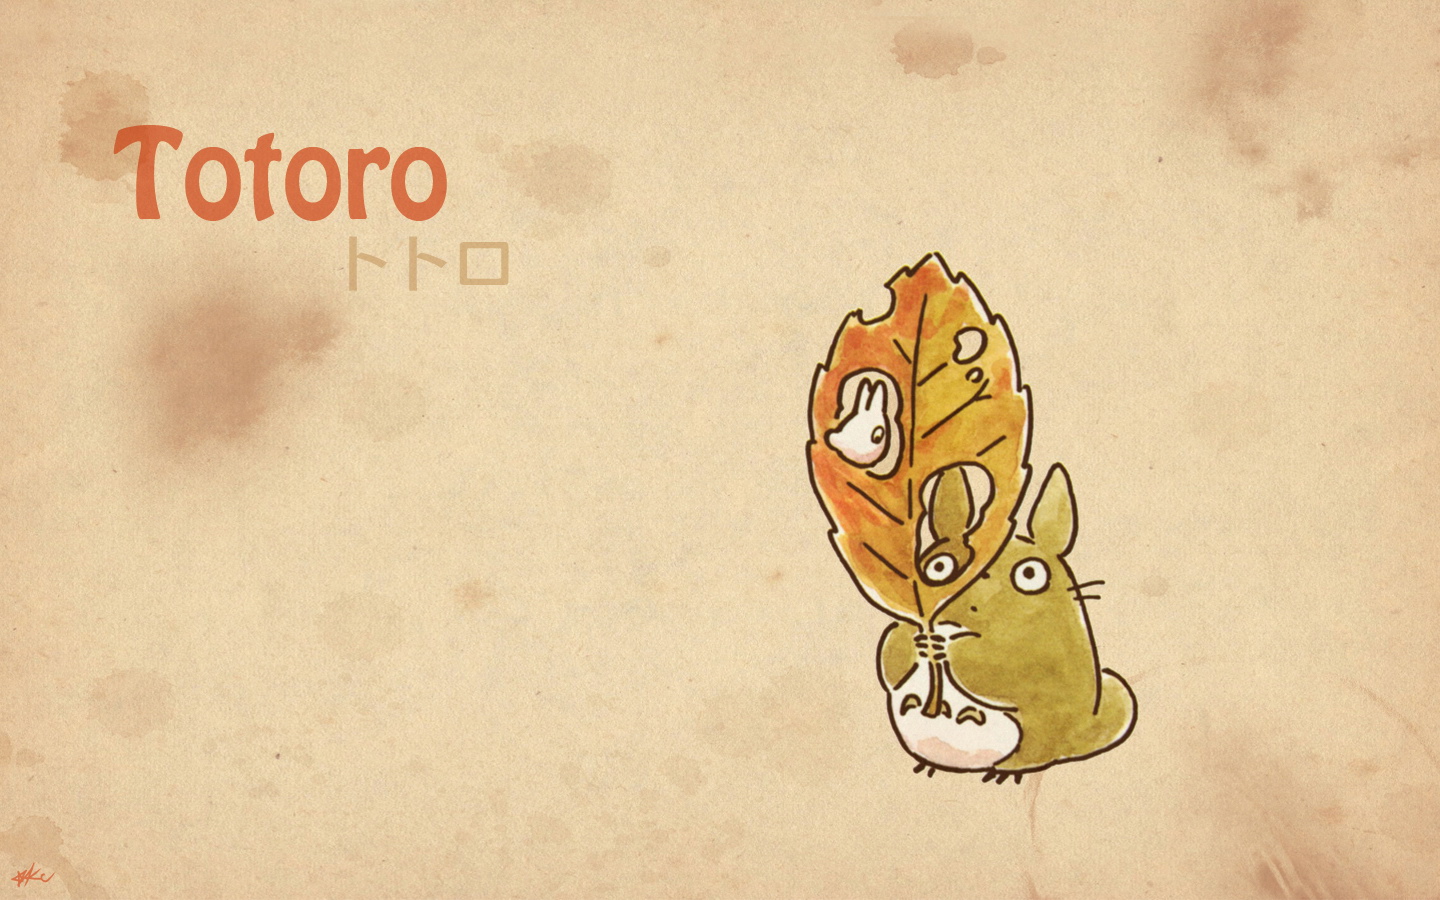 壁纸1440x900Totoro 龙猫 手绘简约版 壁纸6壁纸 Totoro（龙猫）壁纸 Totoro（龙猫）图片 Totoro（龙猫）素材 绘画壁纸 绘画图库 绘画图片素材桌面壁纸